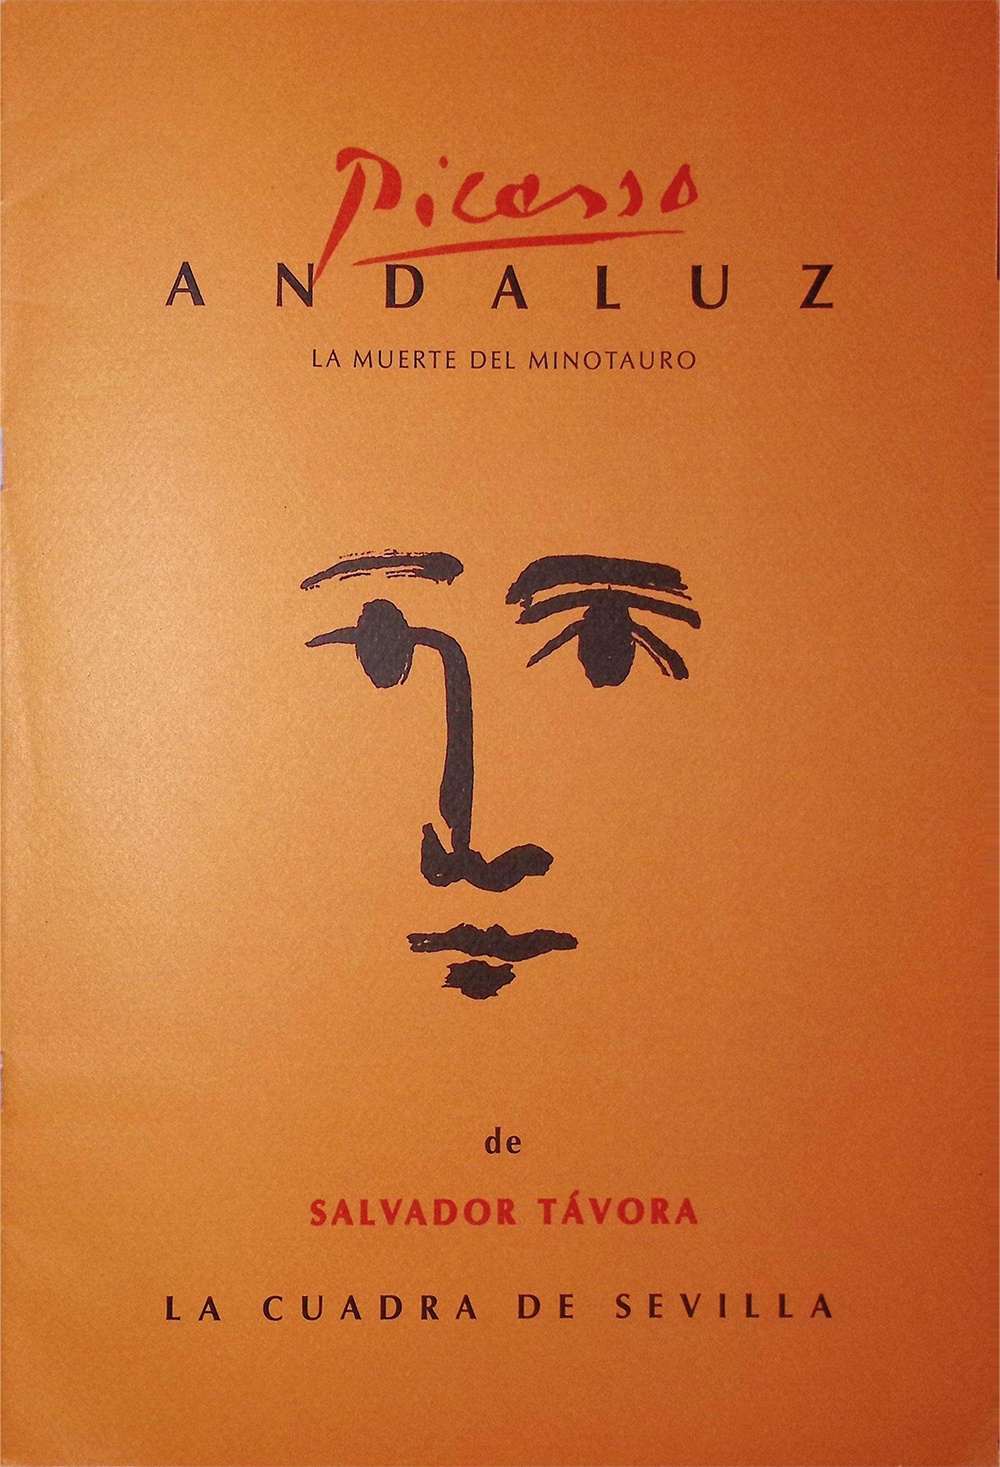 Picasso andaluz. La muerte del Minotauro de Salvador Távora. La Cuadra de Sevilla